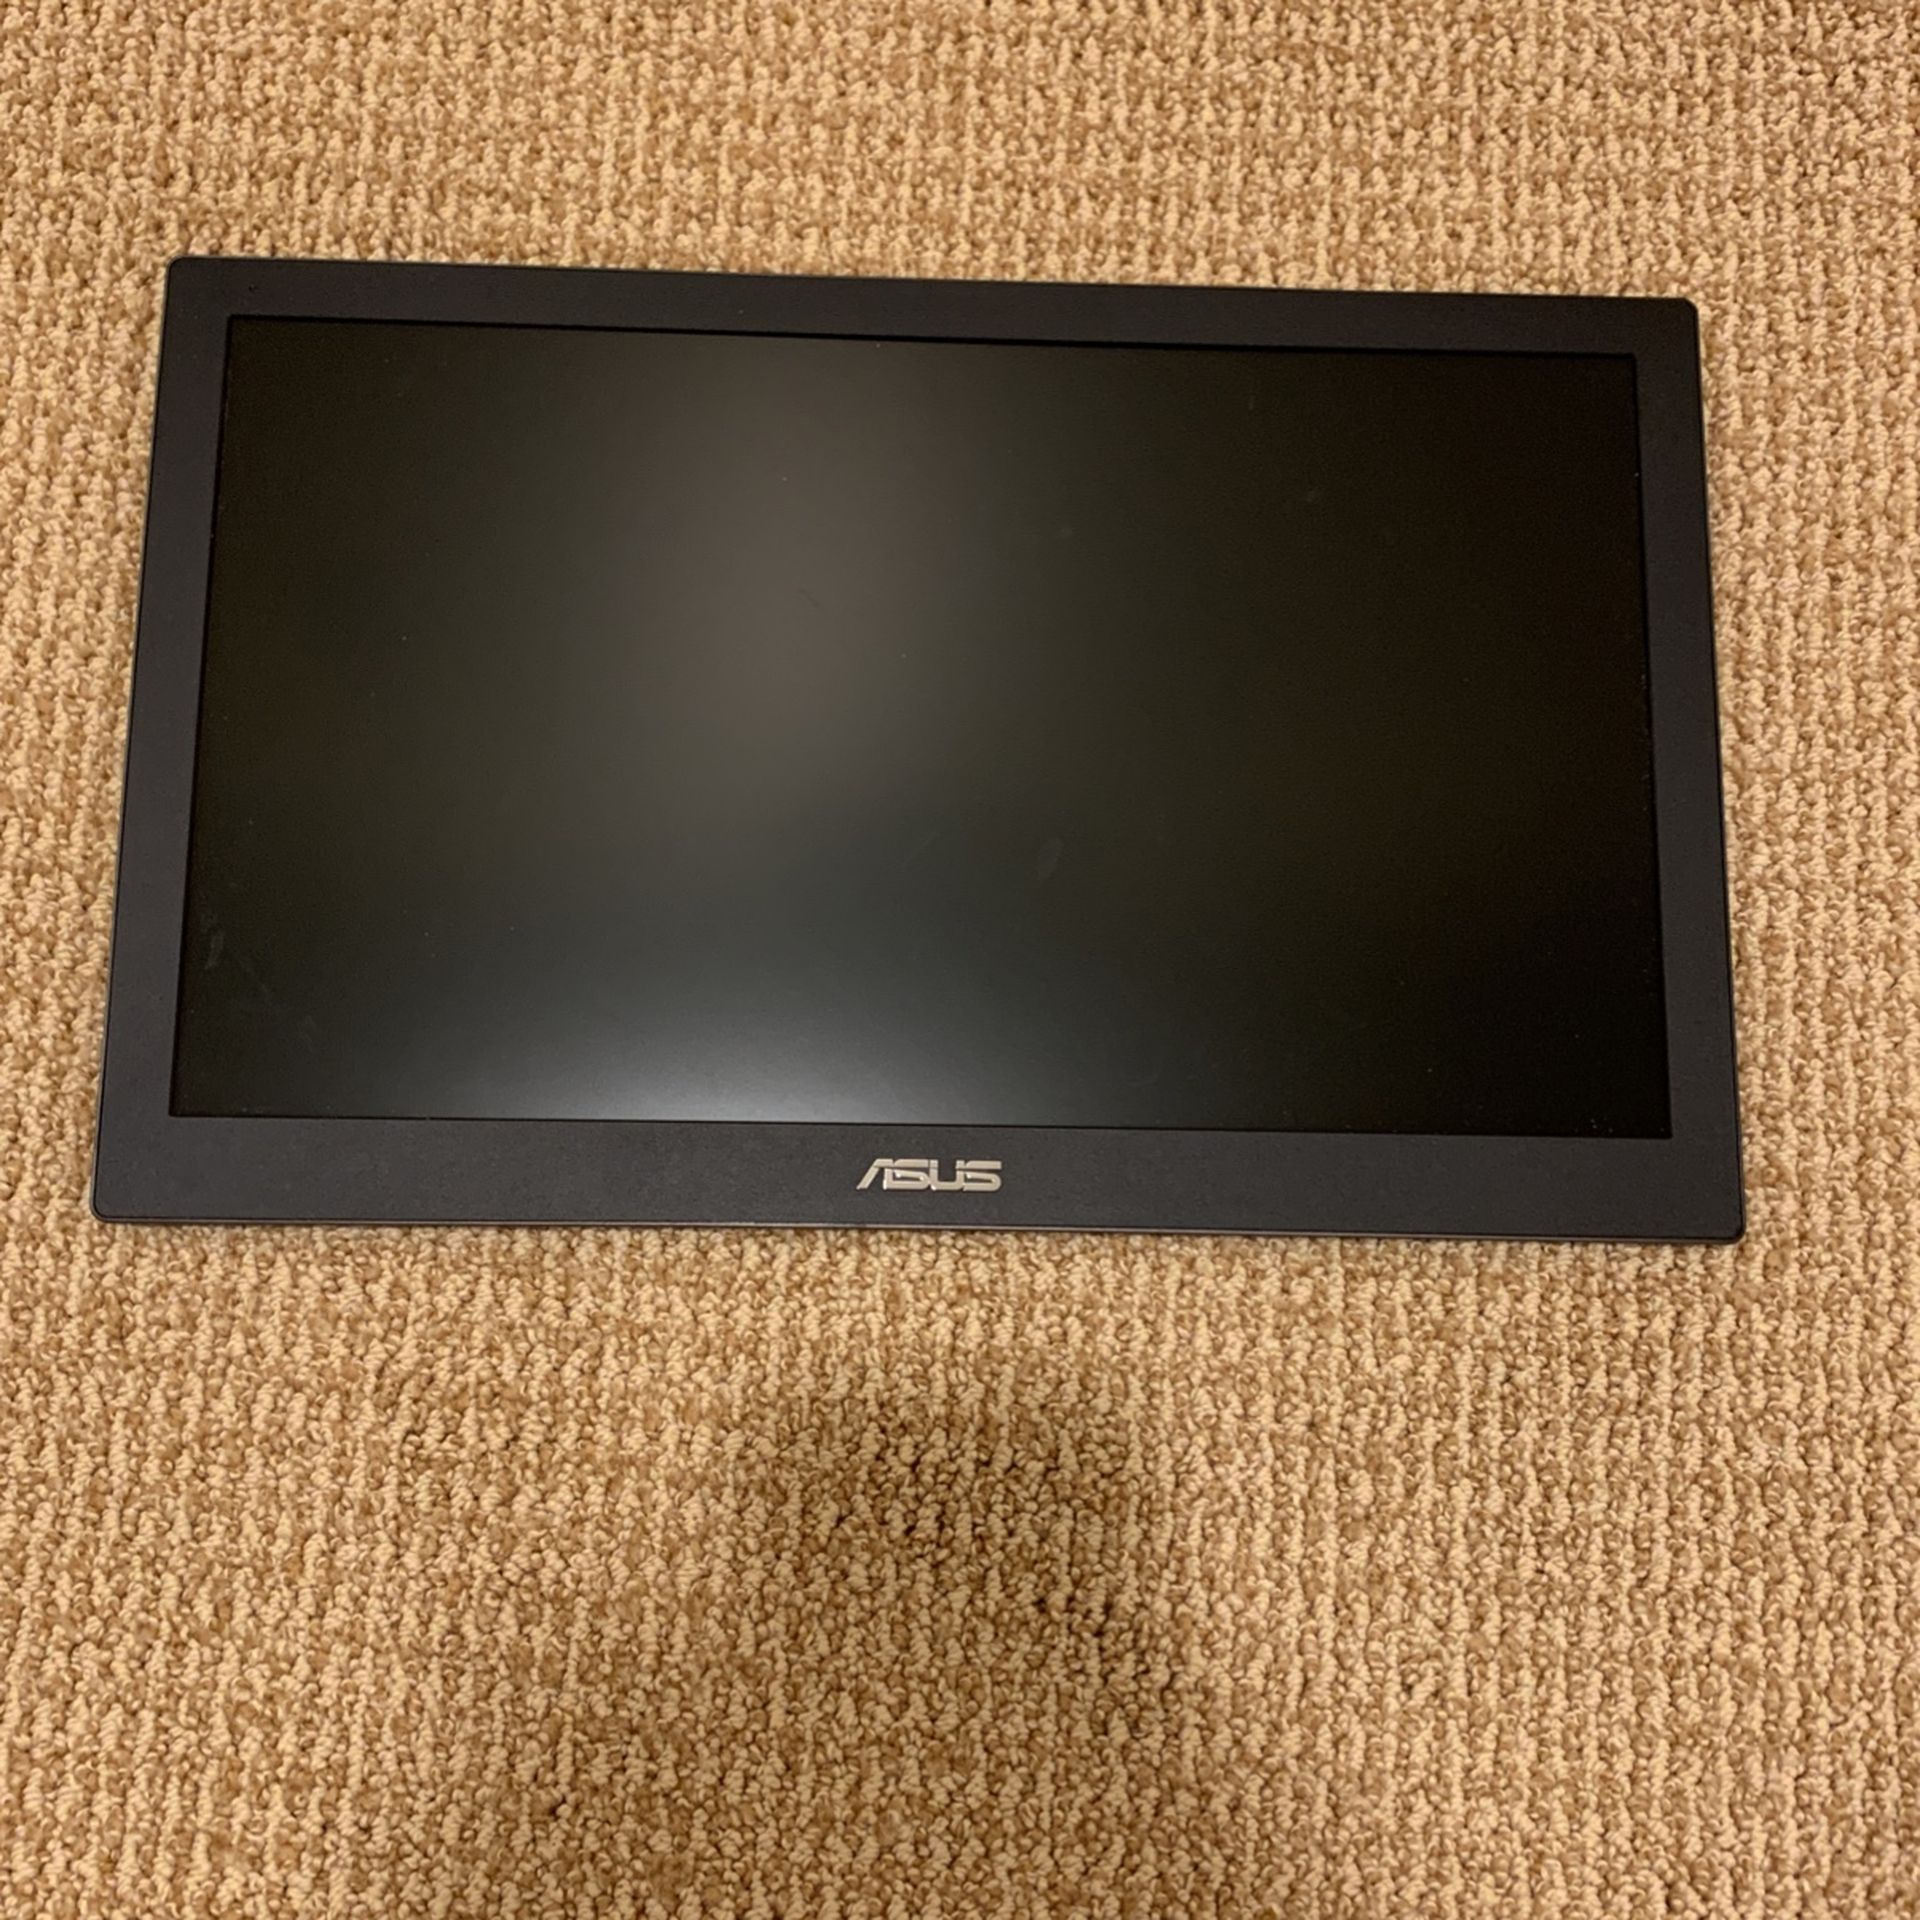 ASUS Portable Monitor